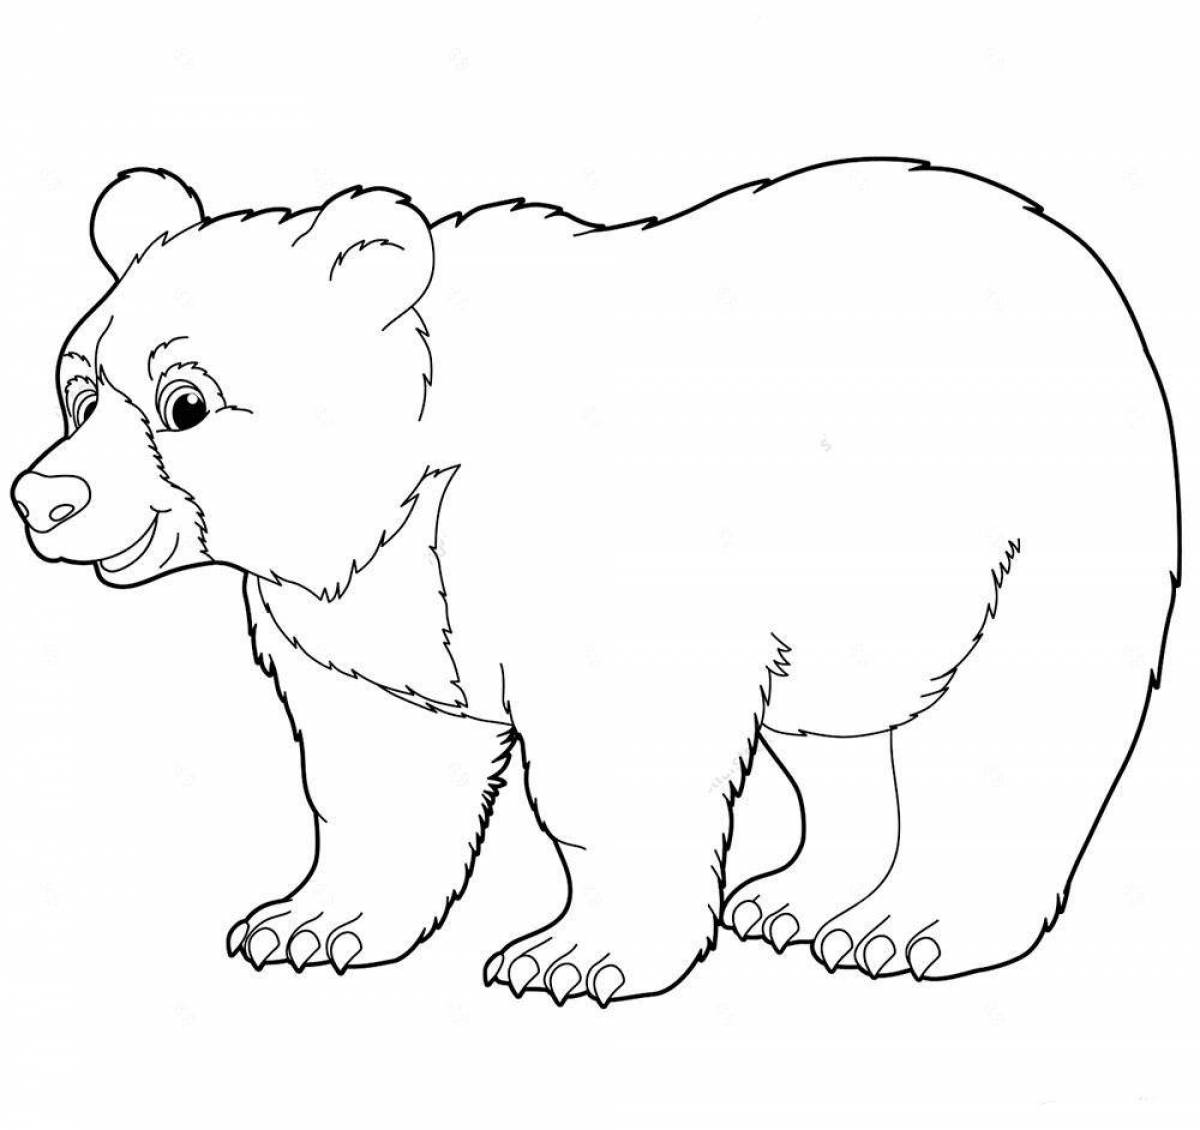 Увлекательная раскраска медведя для детей 2-3 лет